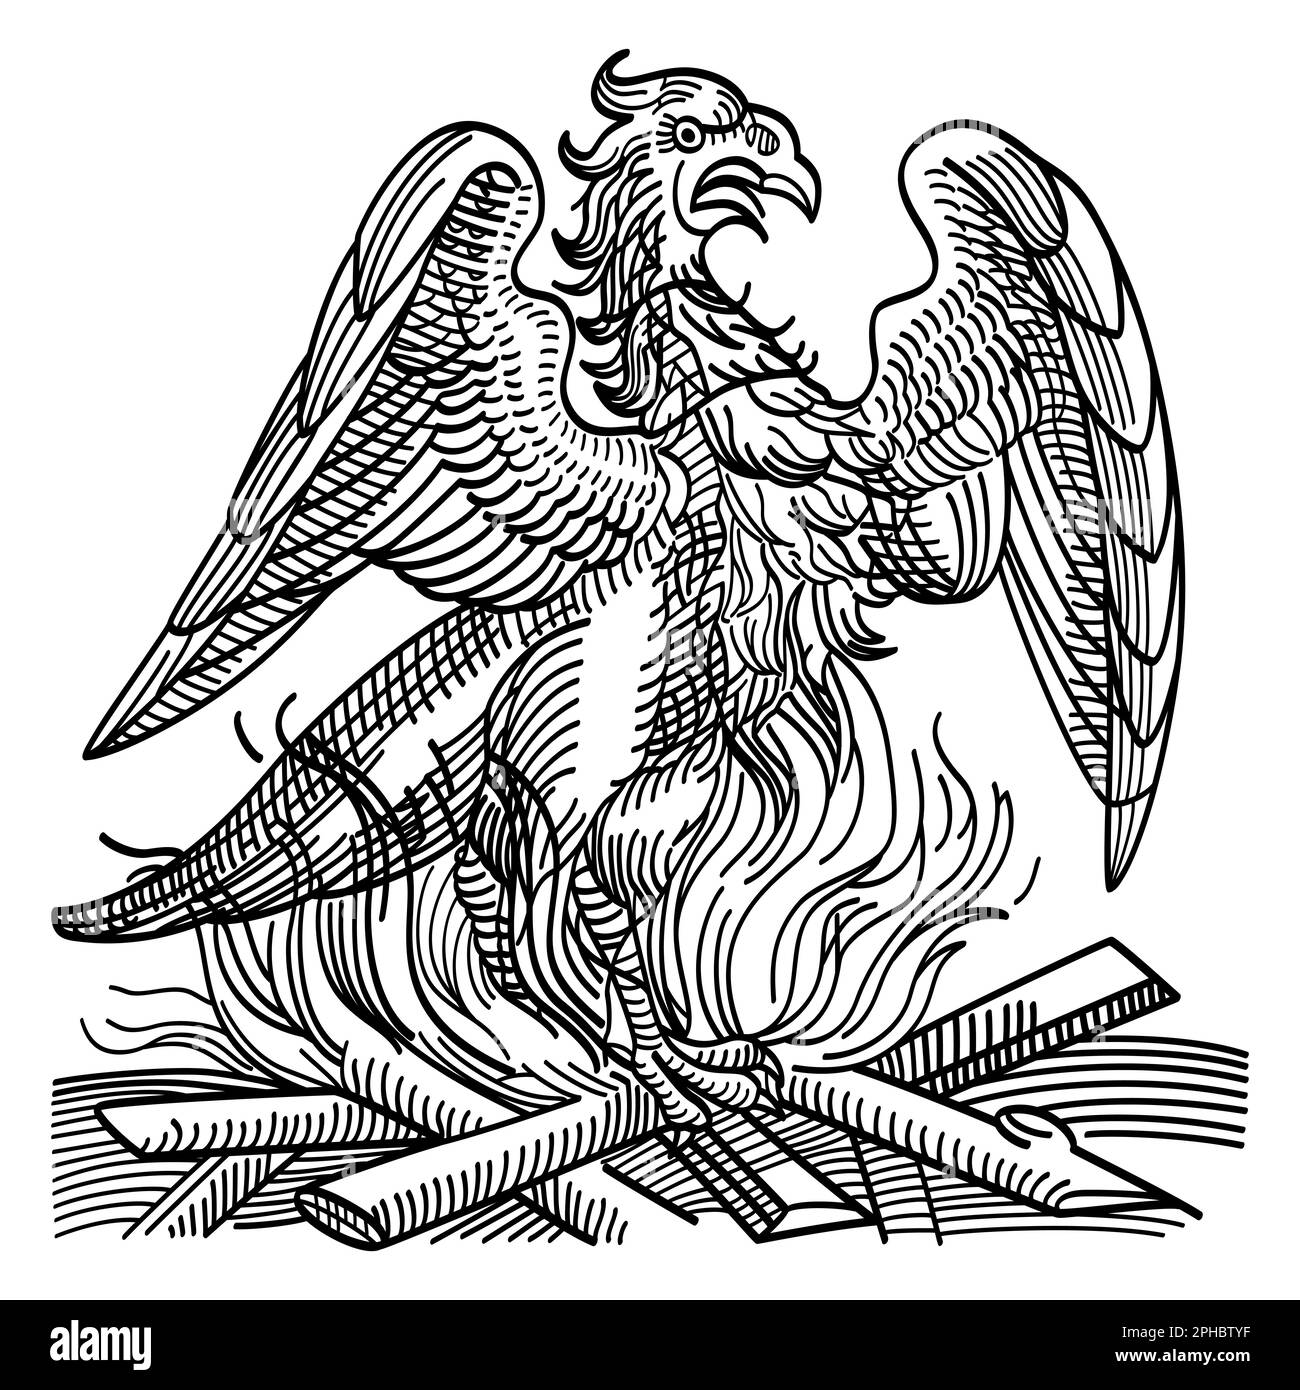 Un phoenix obtient une nouvelle vie en se levant des cendres de son prédécesseur. Oiseau immortel et créature de la mythologie grecque antique. Banque D'Images